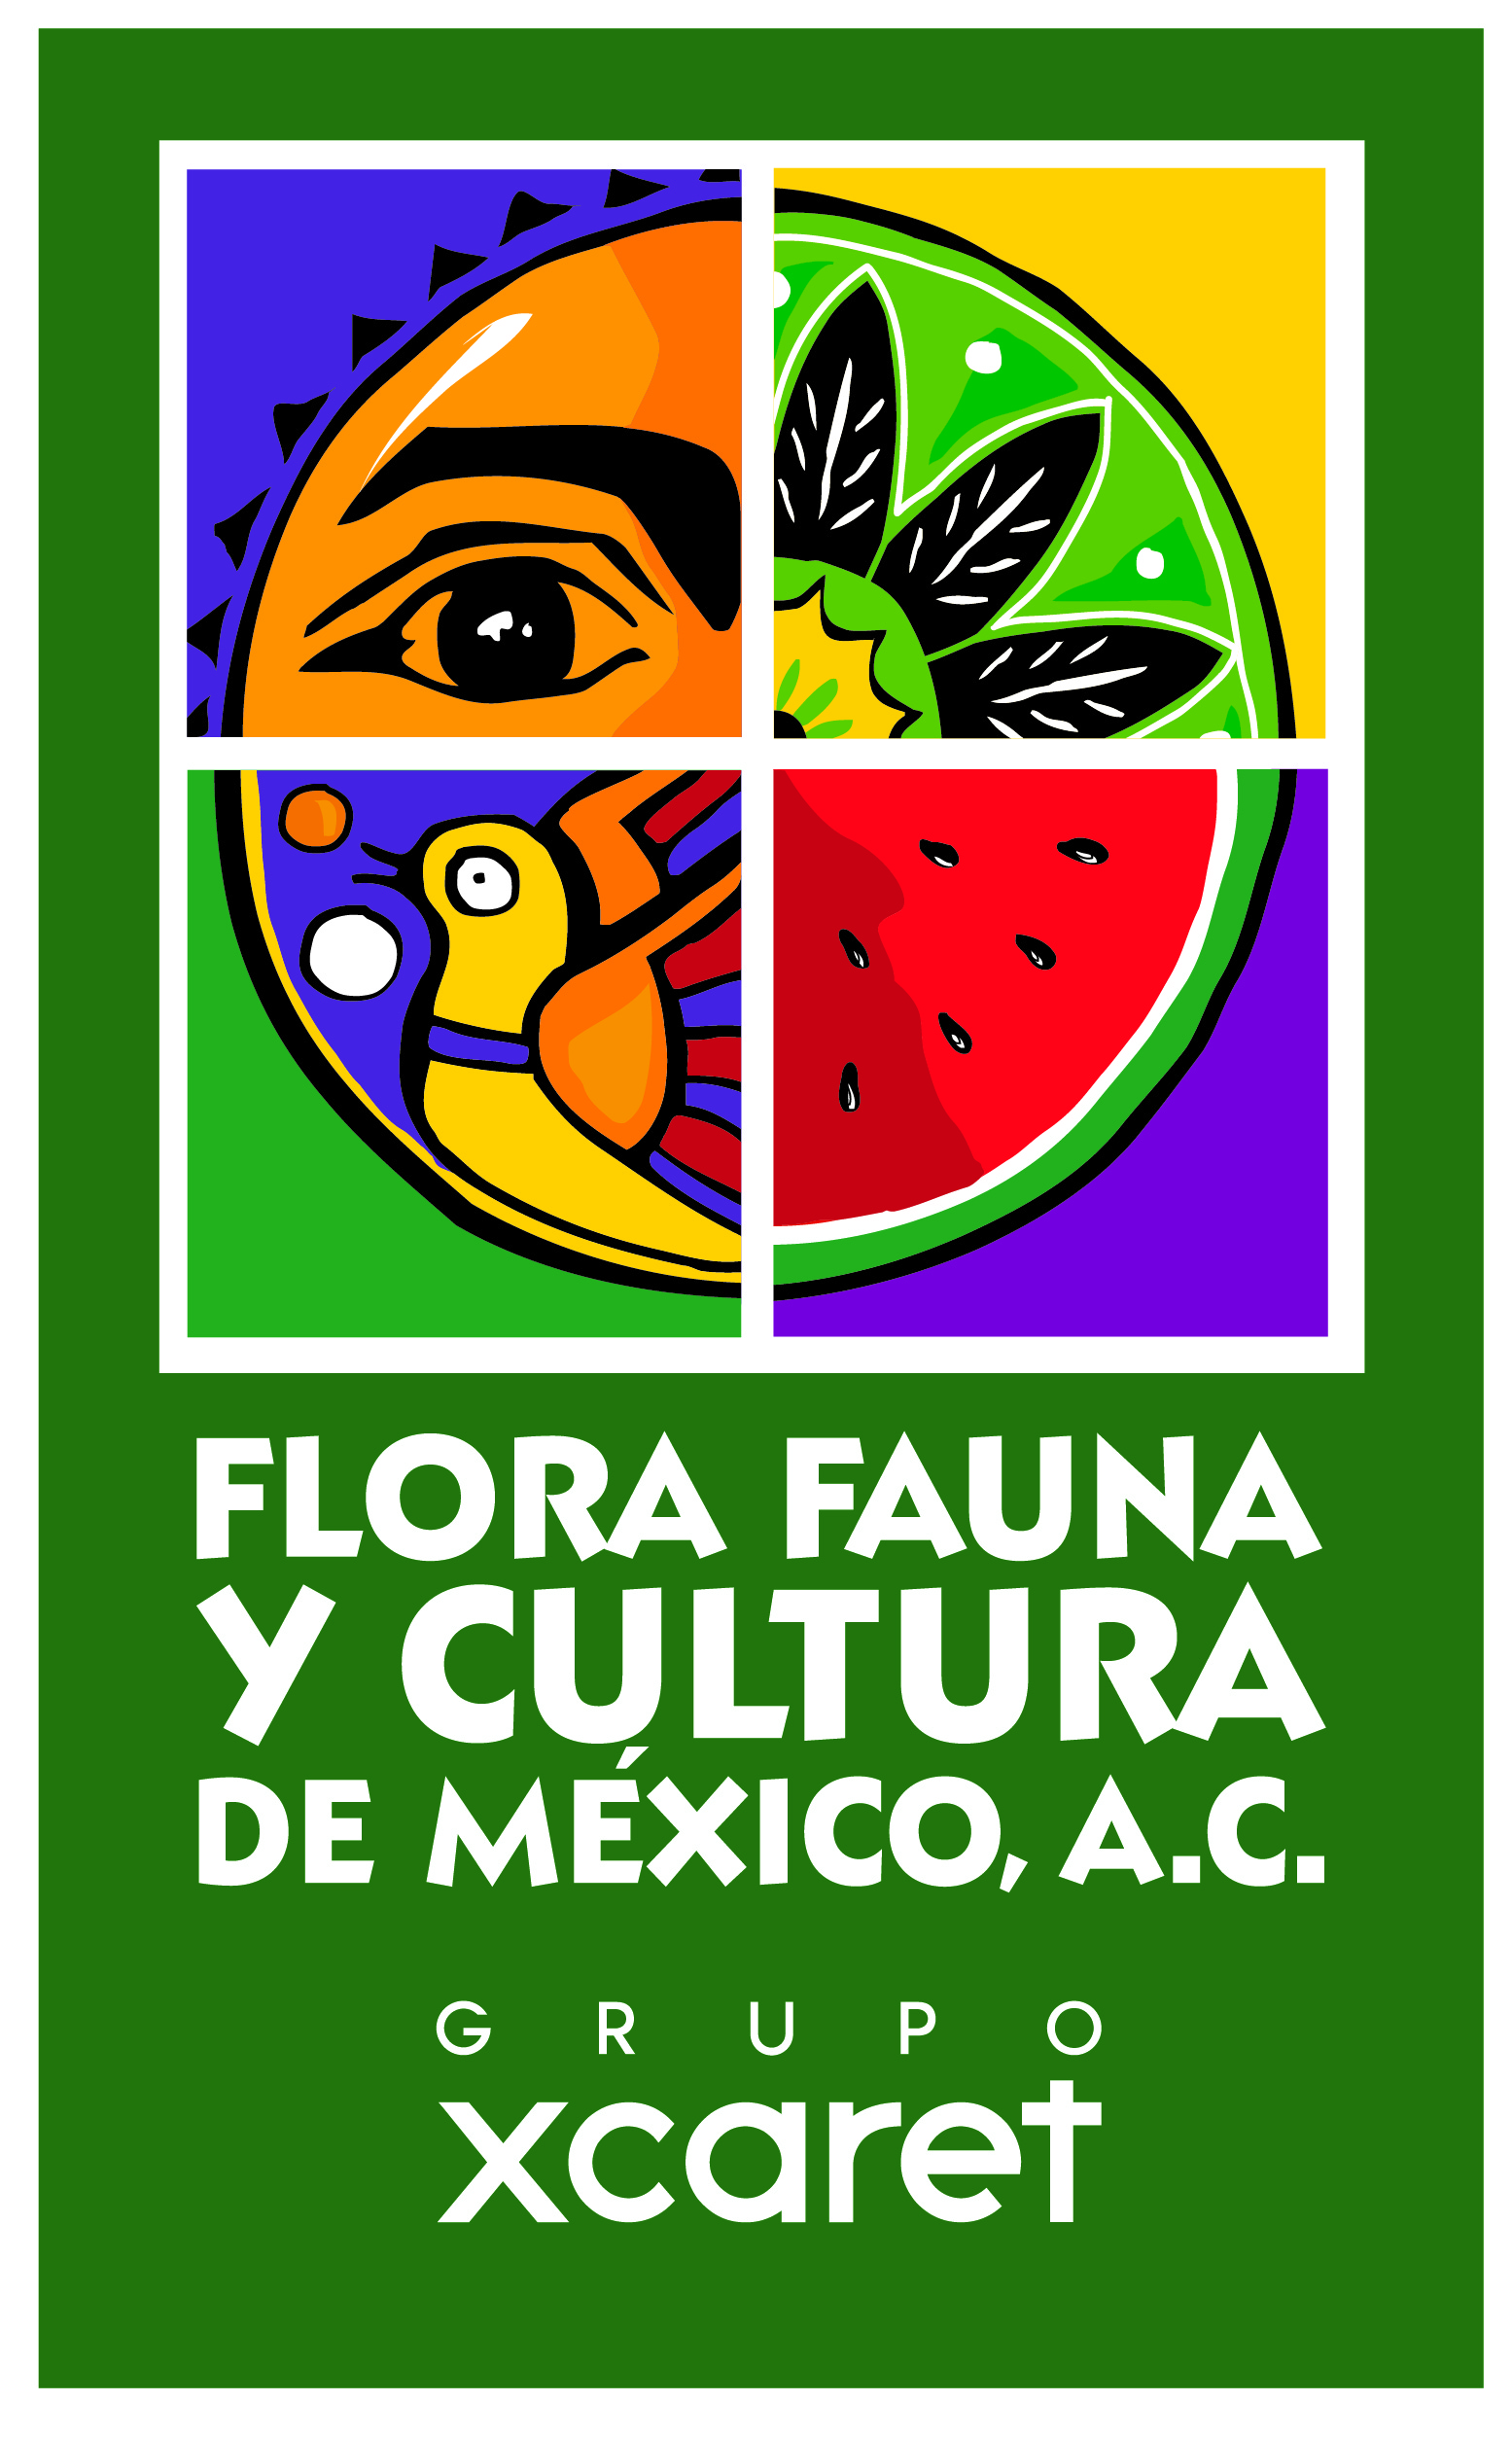 Flora Fauna y Cultura de Mexico